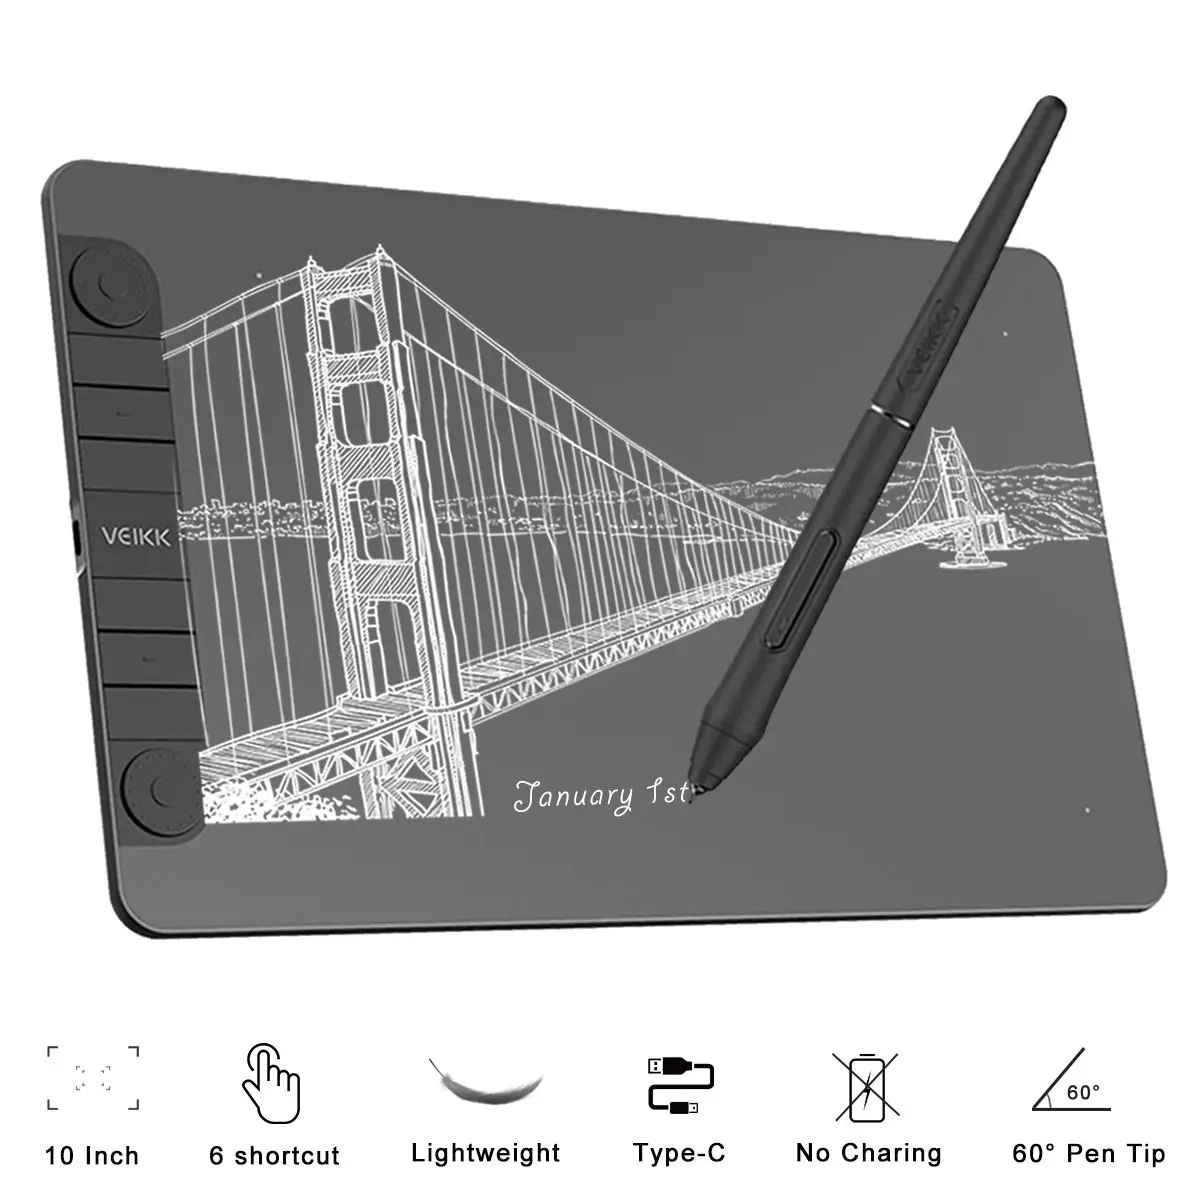 

Планшет для рисования VEIKK VK1060Pro, 10x6 дюймов, со стилусом без батареи 8192 уровня, для Mac, Android, Windows, цифровой графический планшет